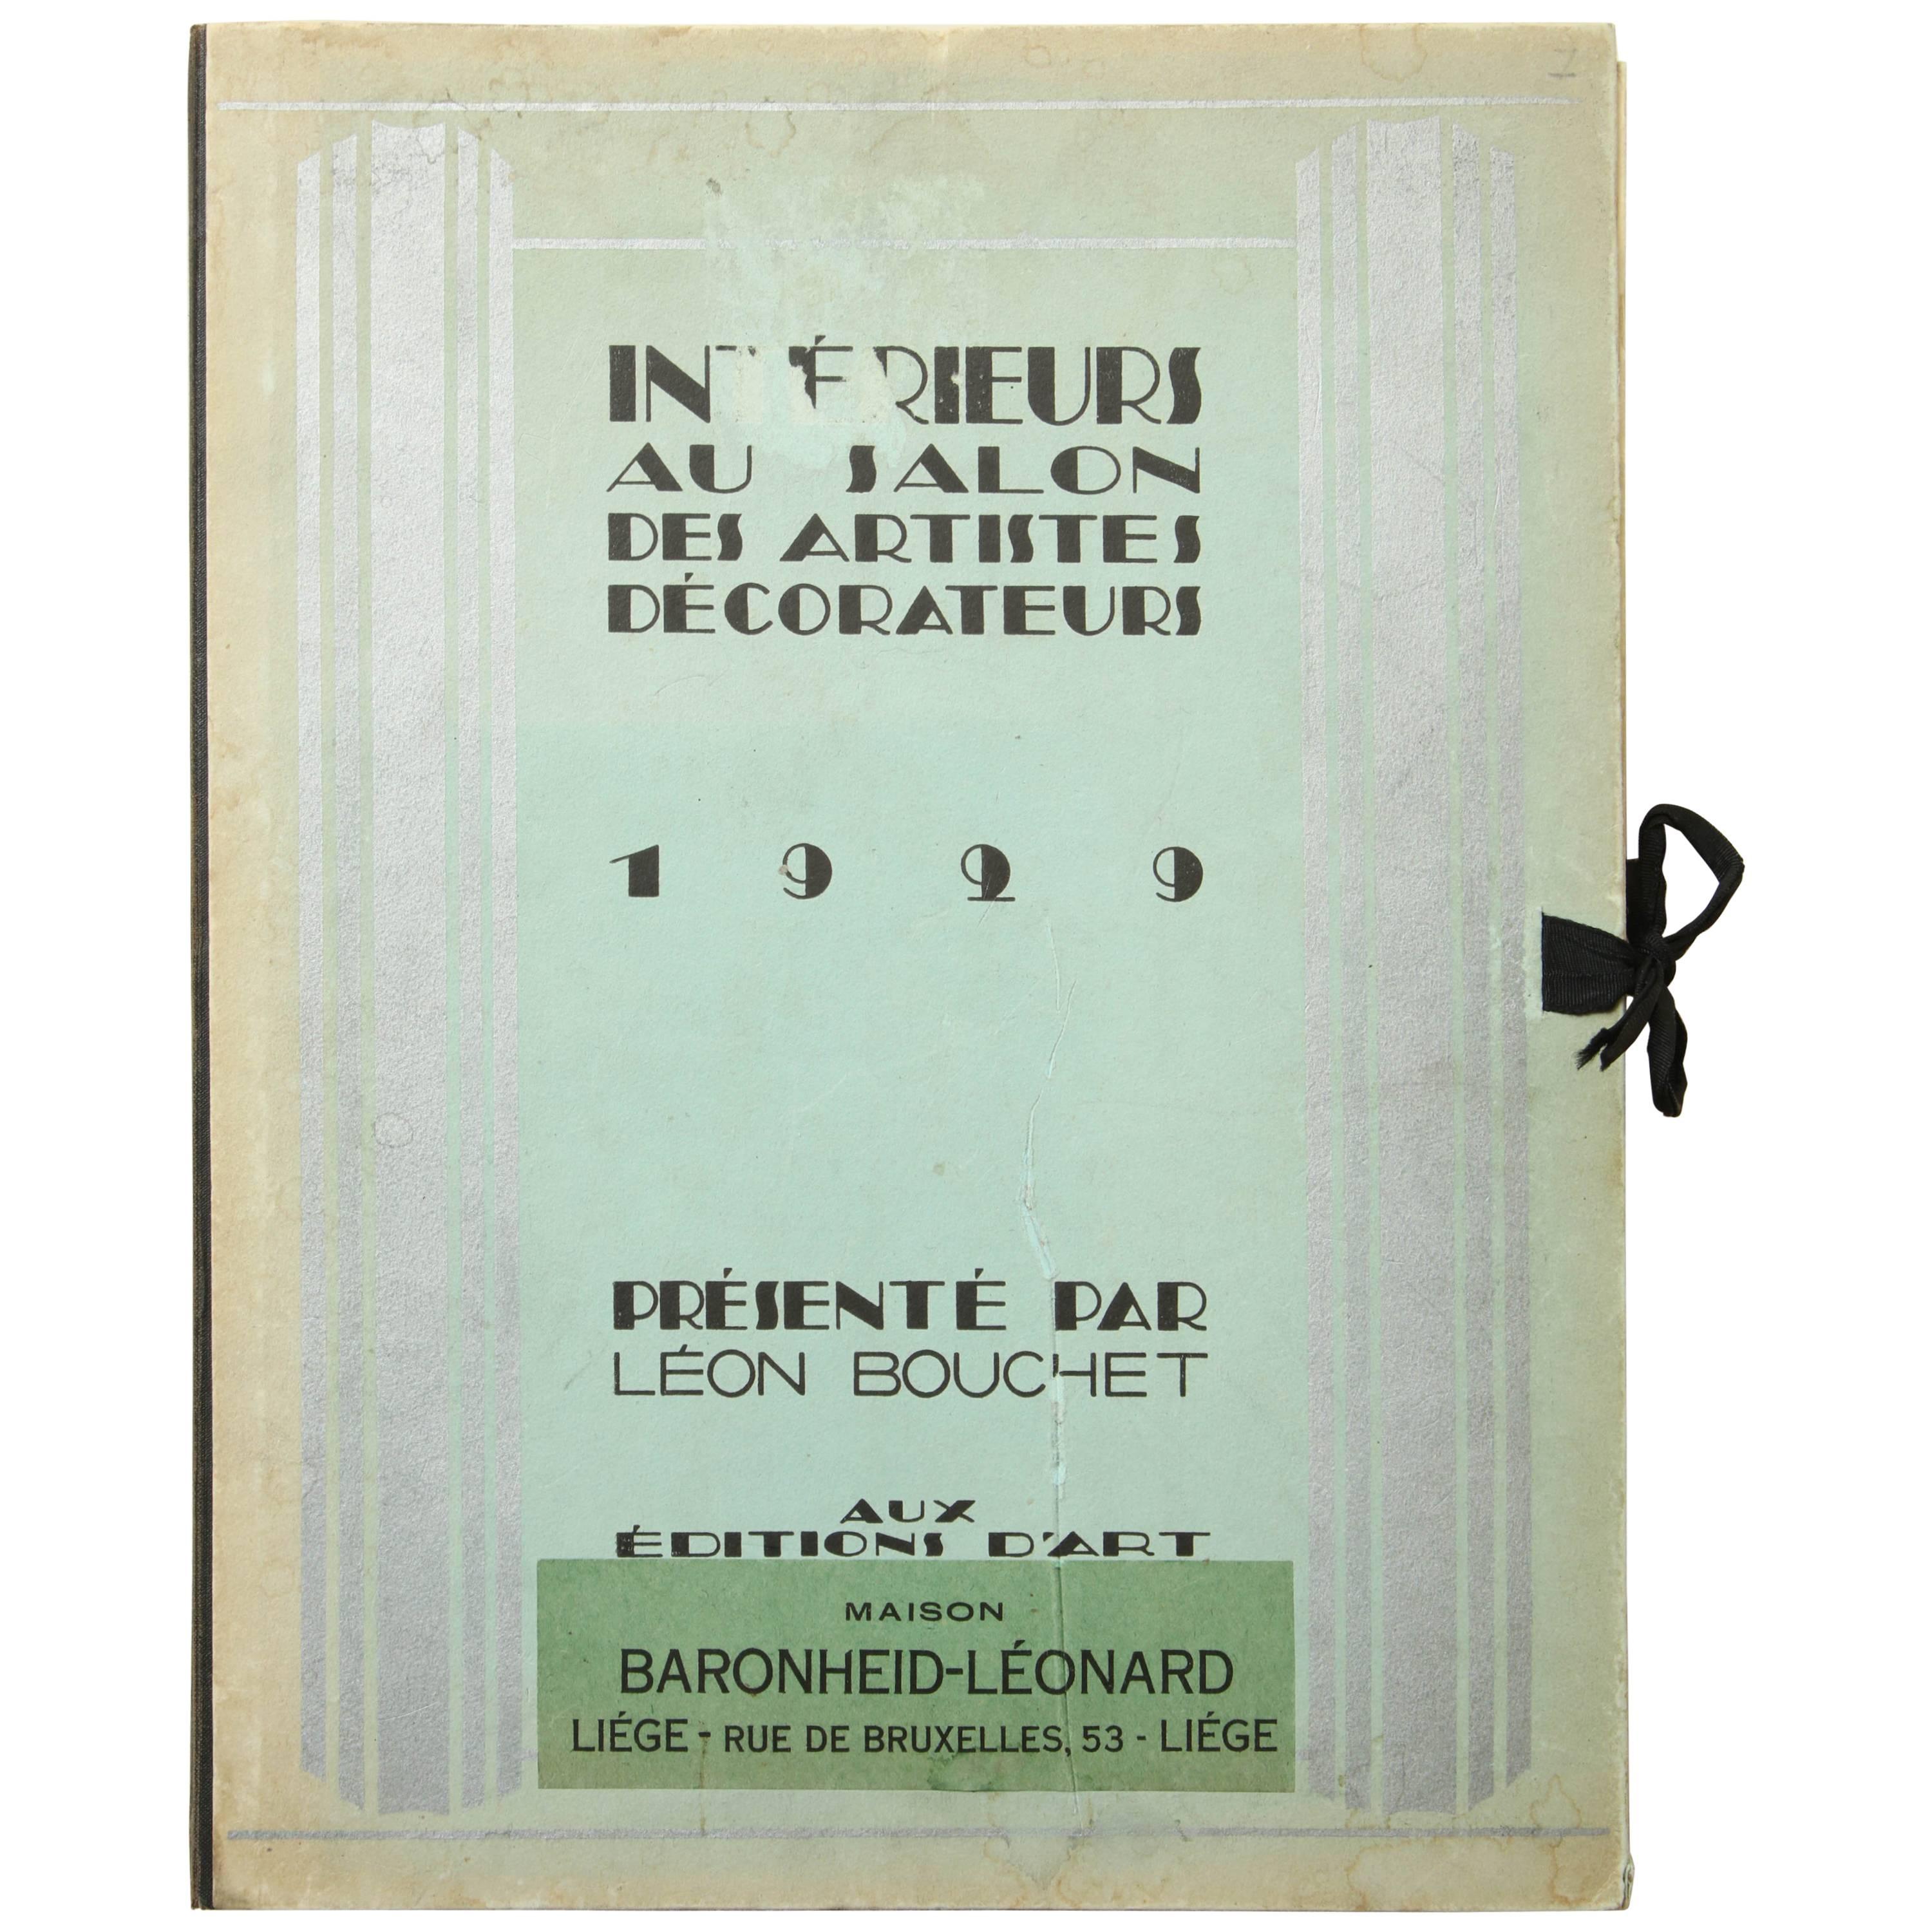 “Interieurs Au Salon Des Artistes Decorateurs 1929” by Leon Bouchet For Sale